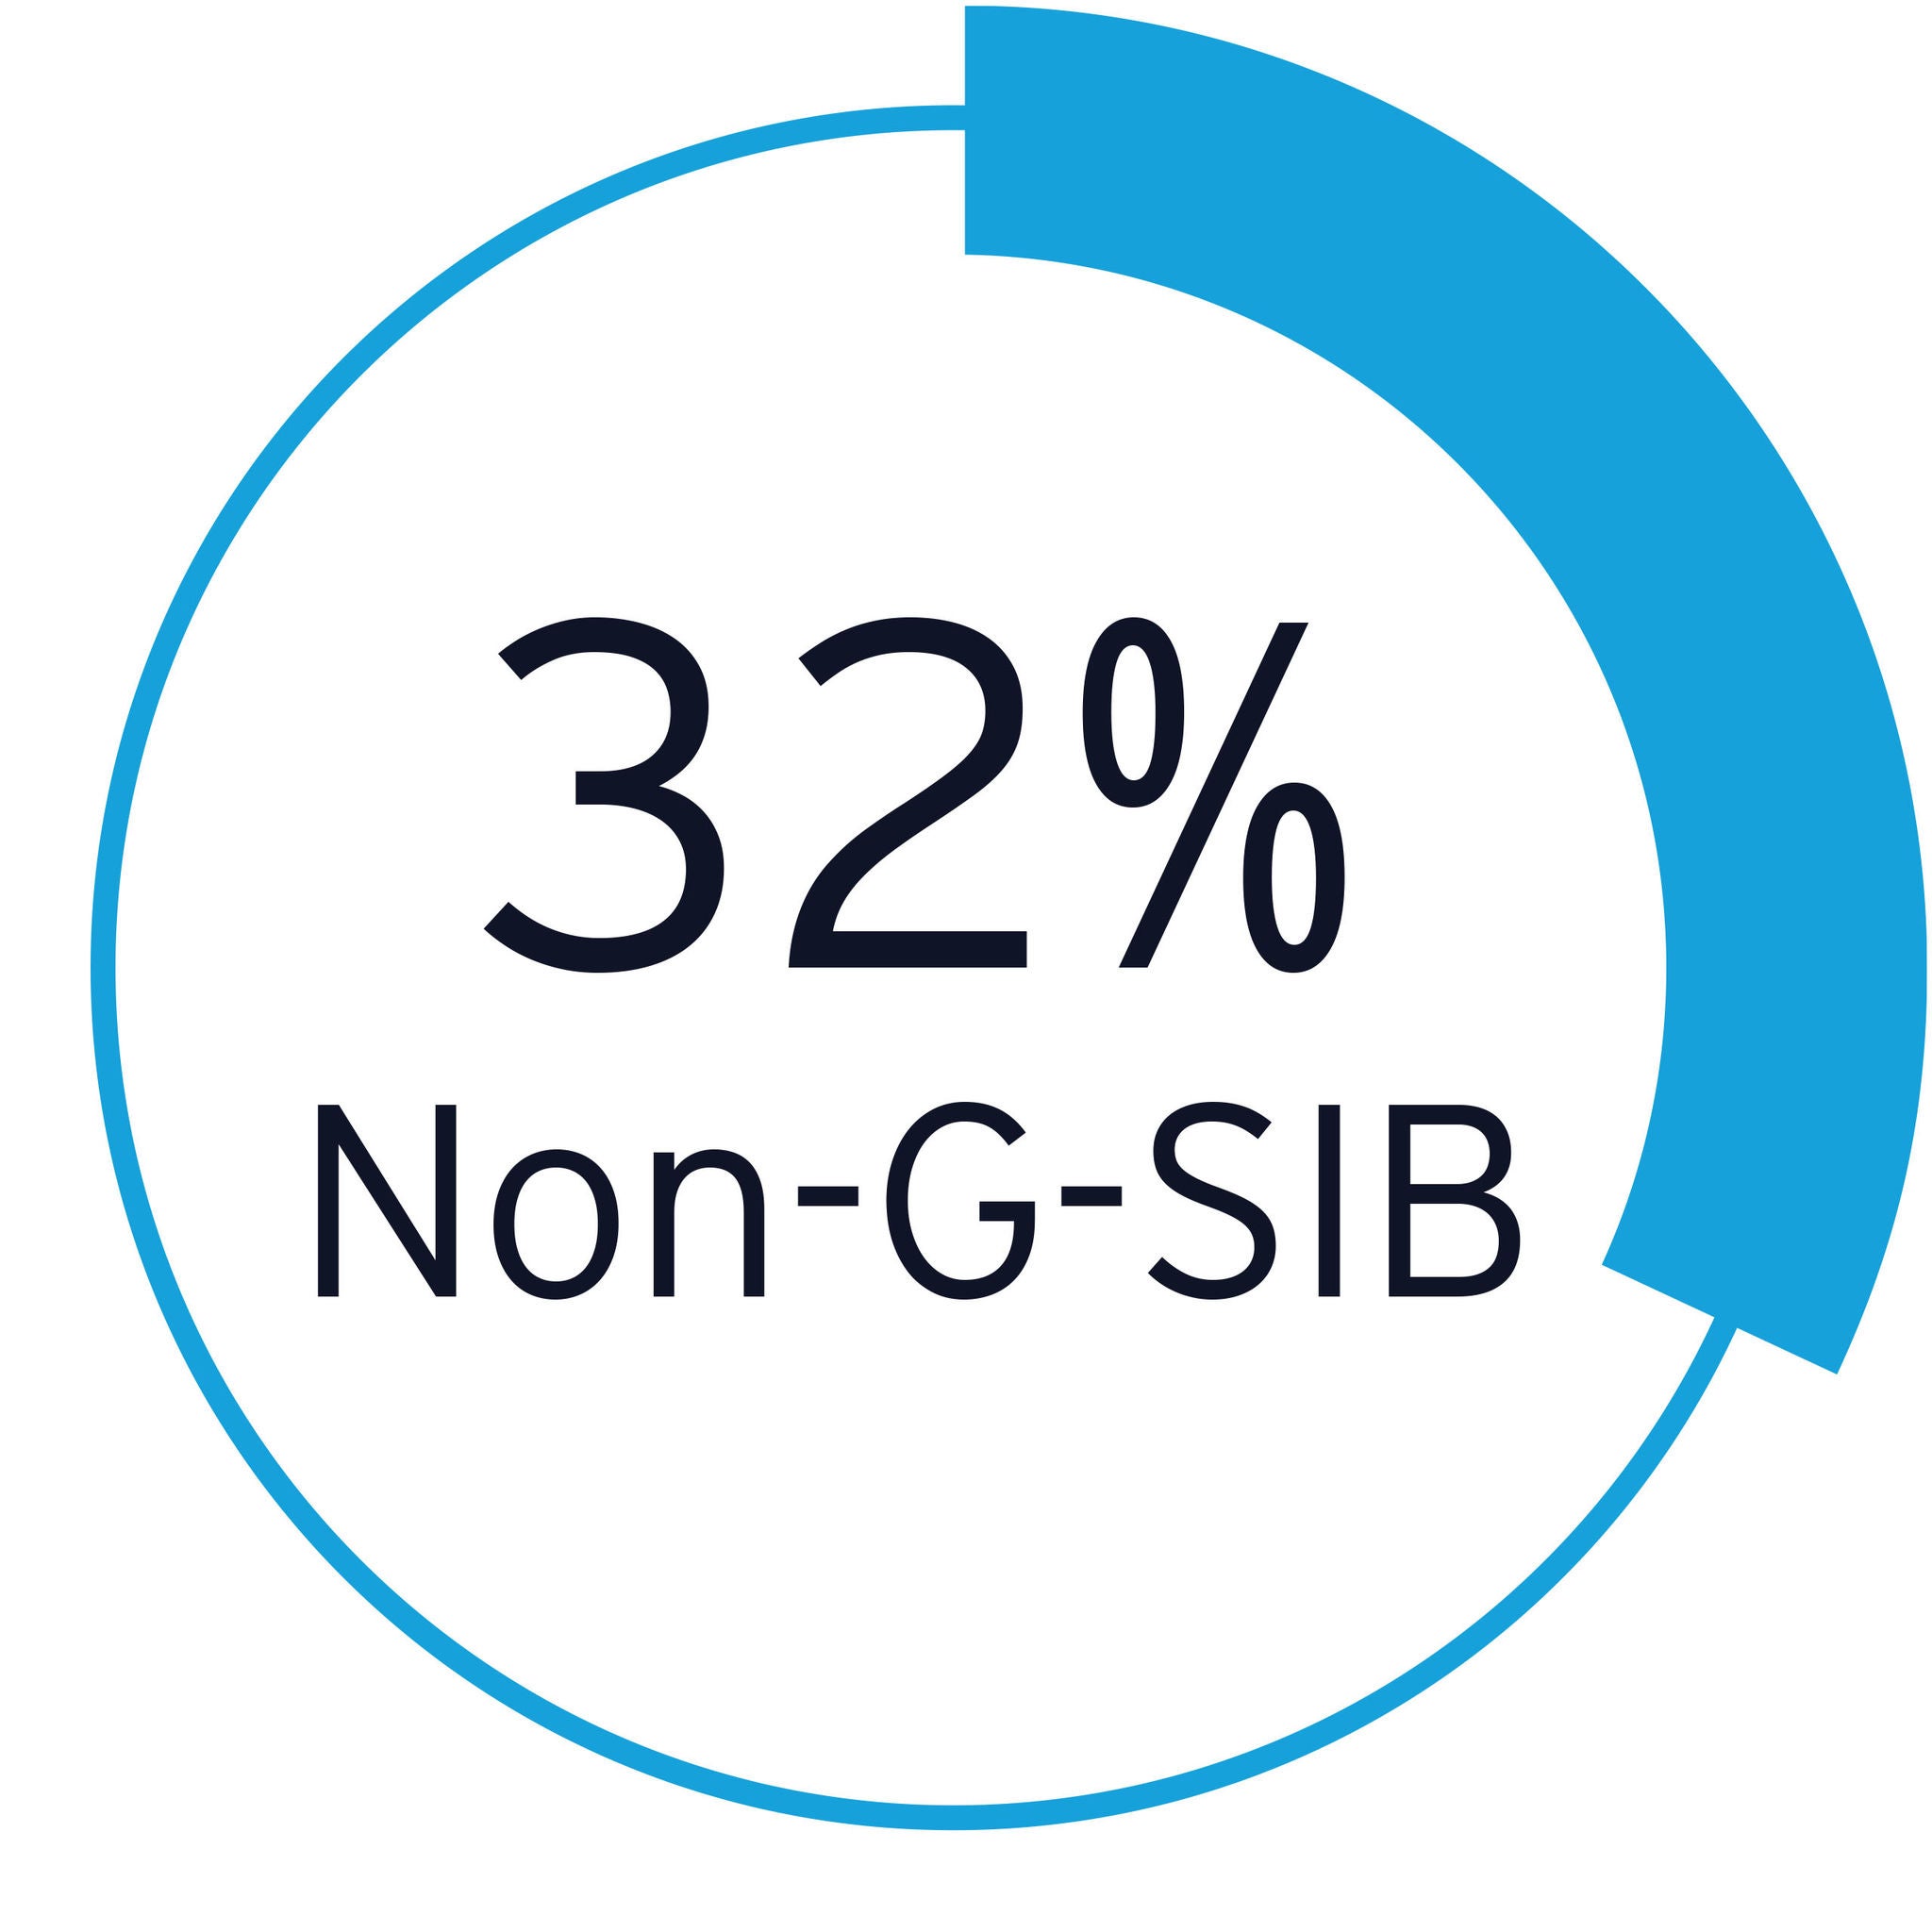 32% non-g-sib